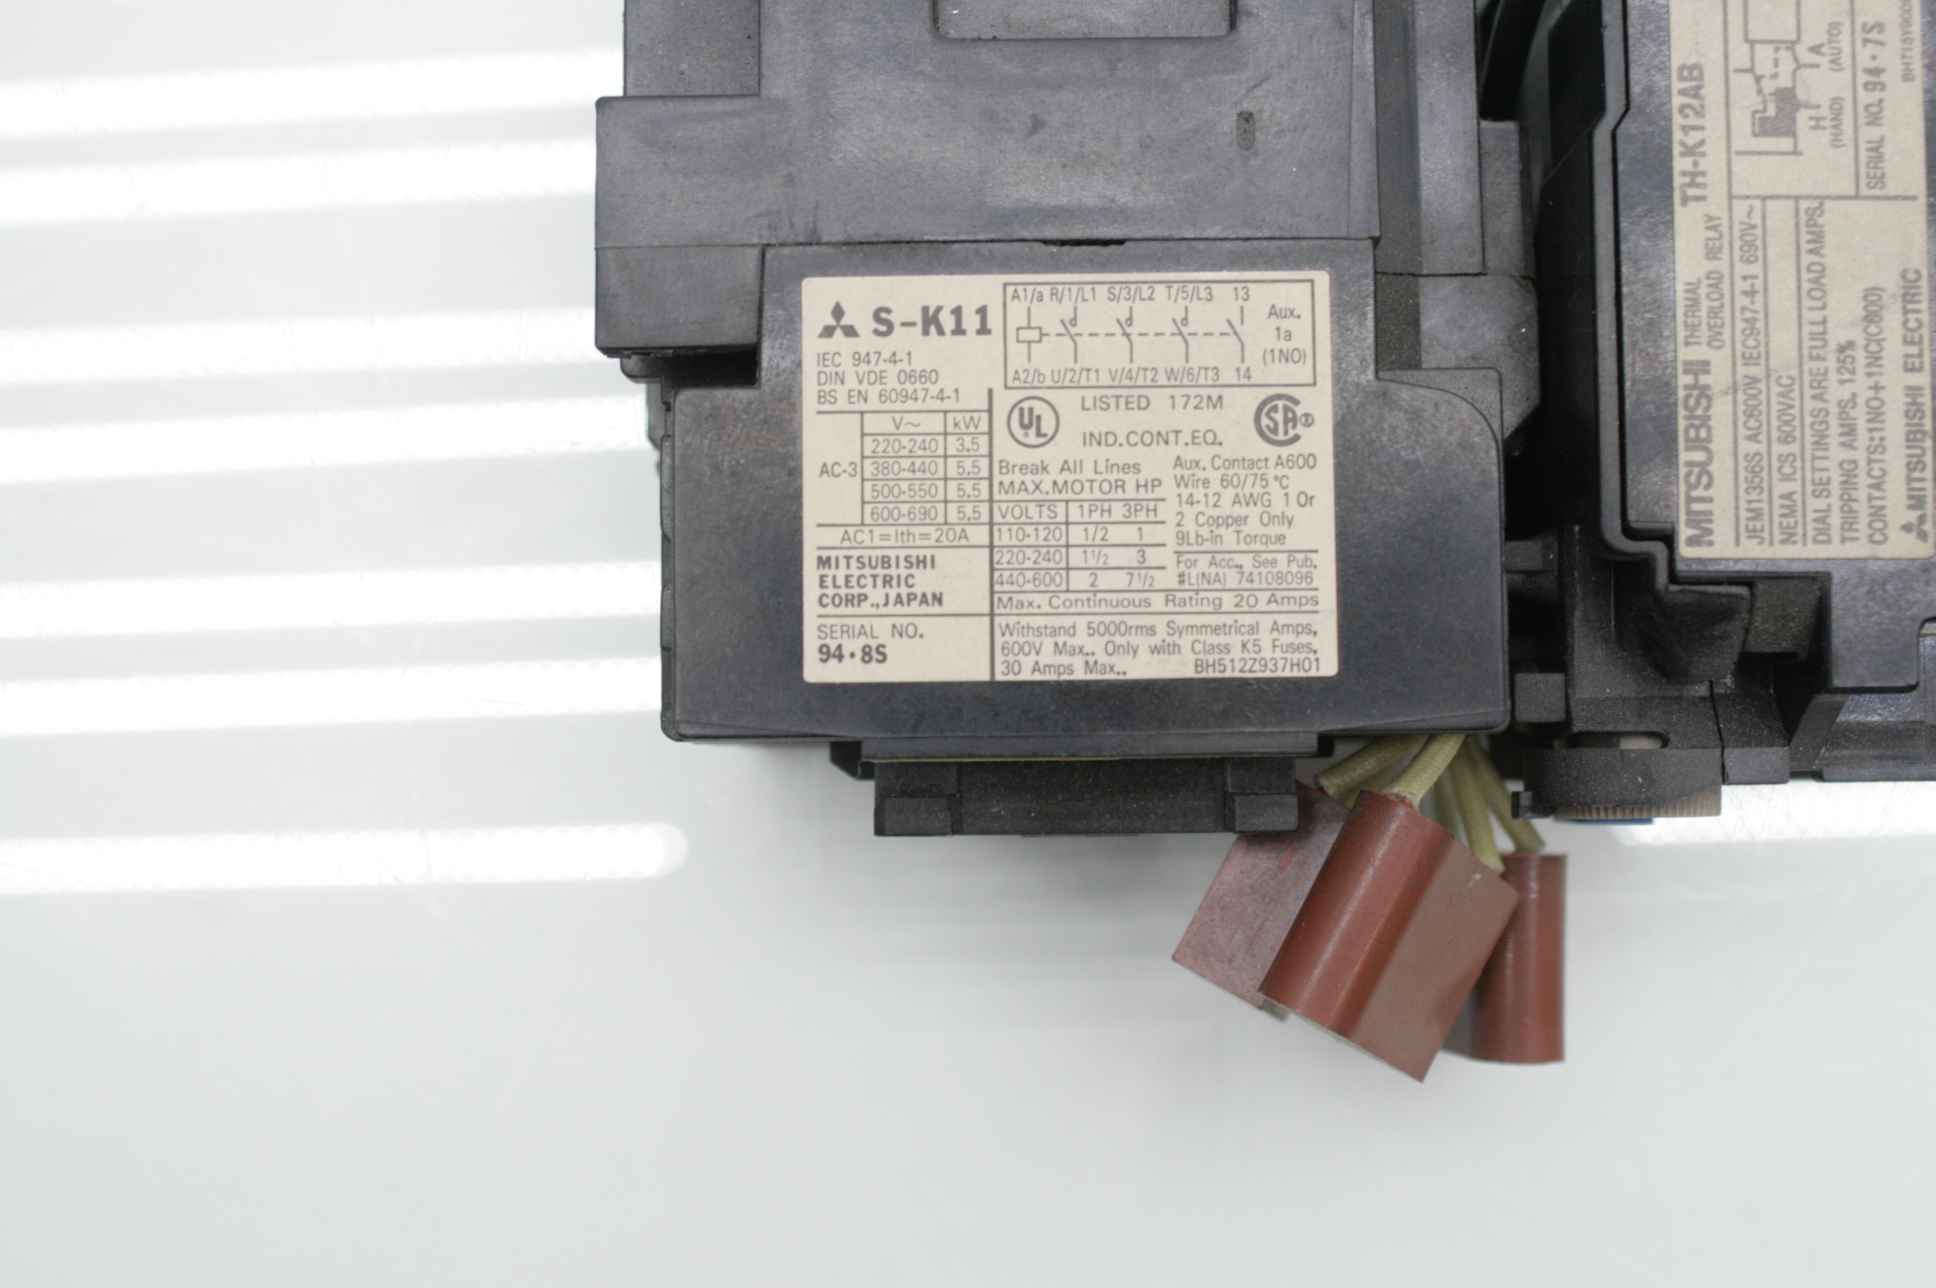 Mitsubishi S-K12 elektromagnetischer Schalter+TH-12 Überlastrelais, 17.31 €